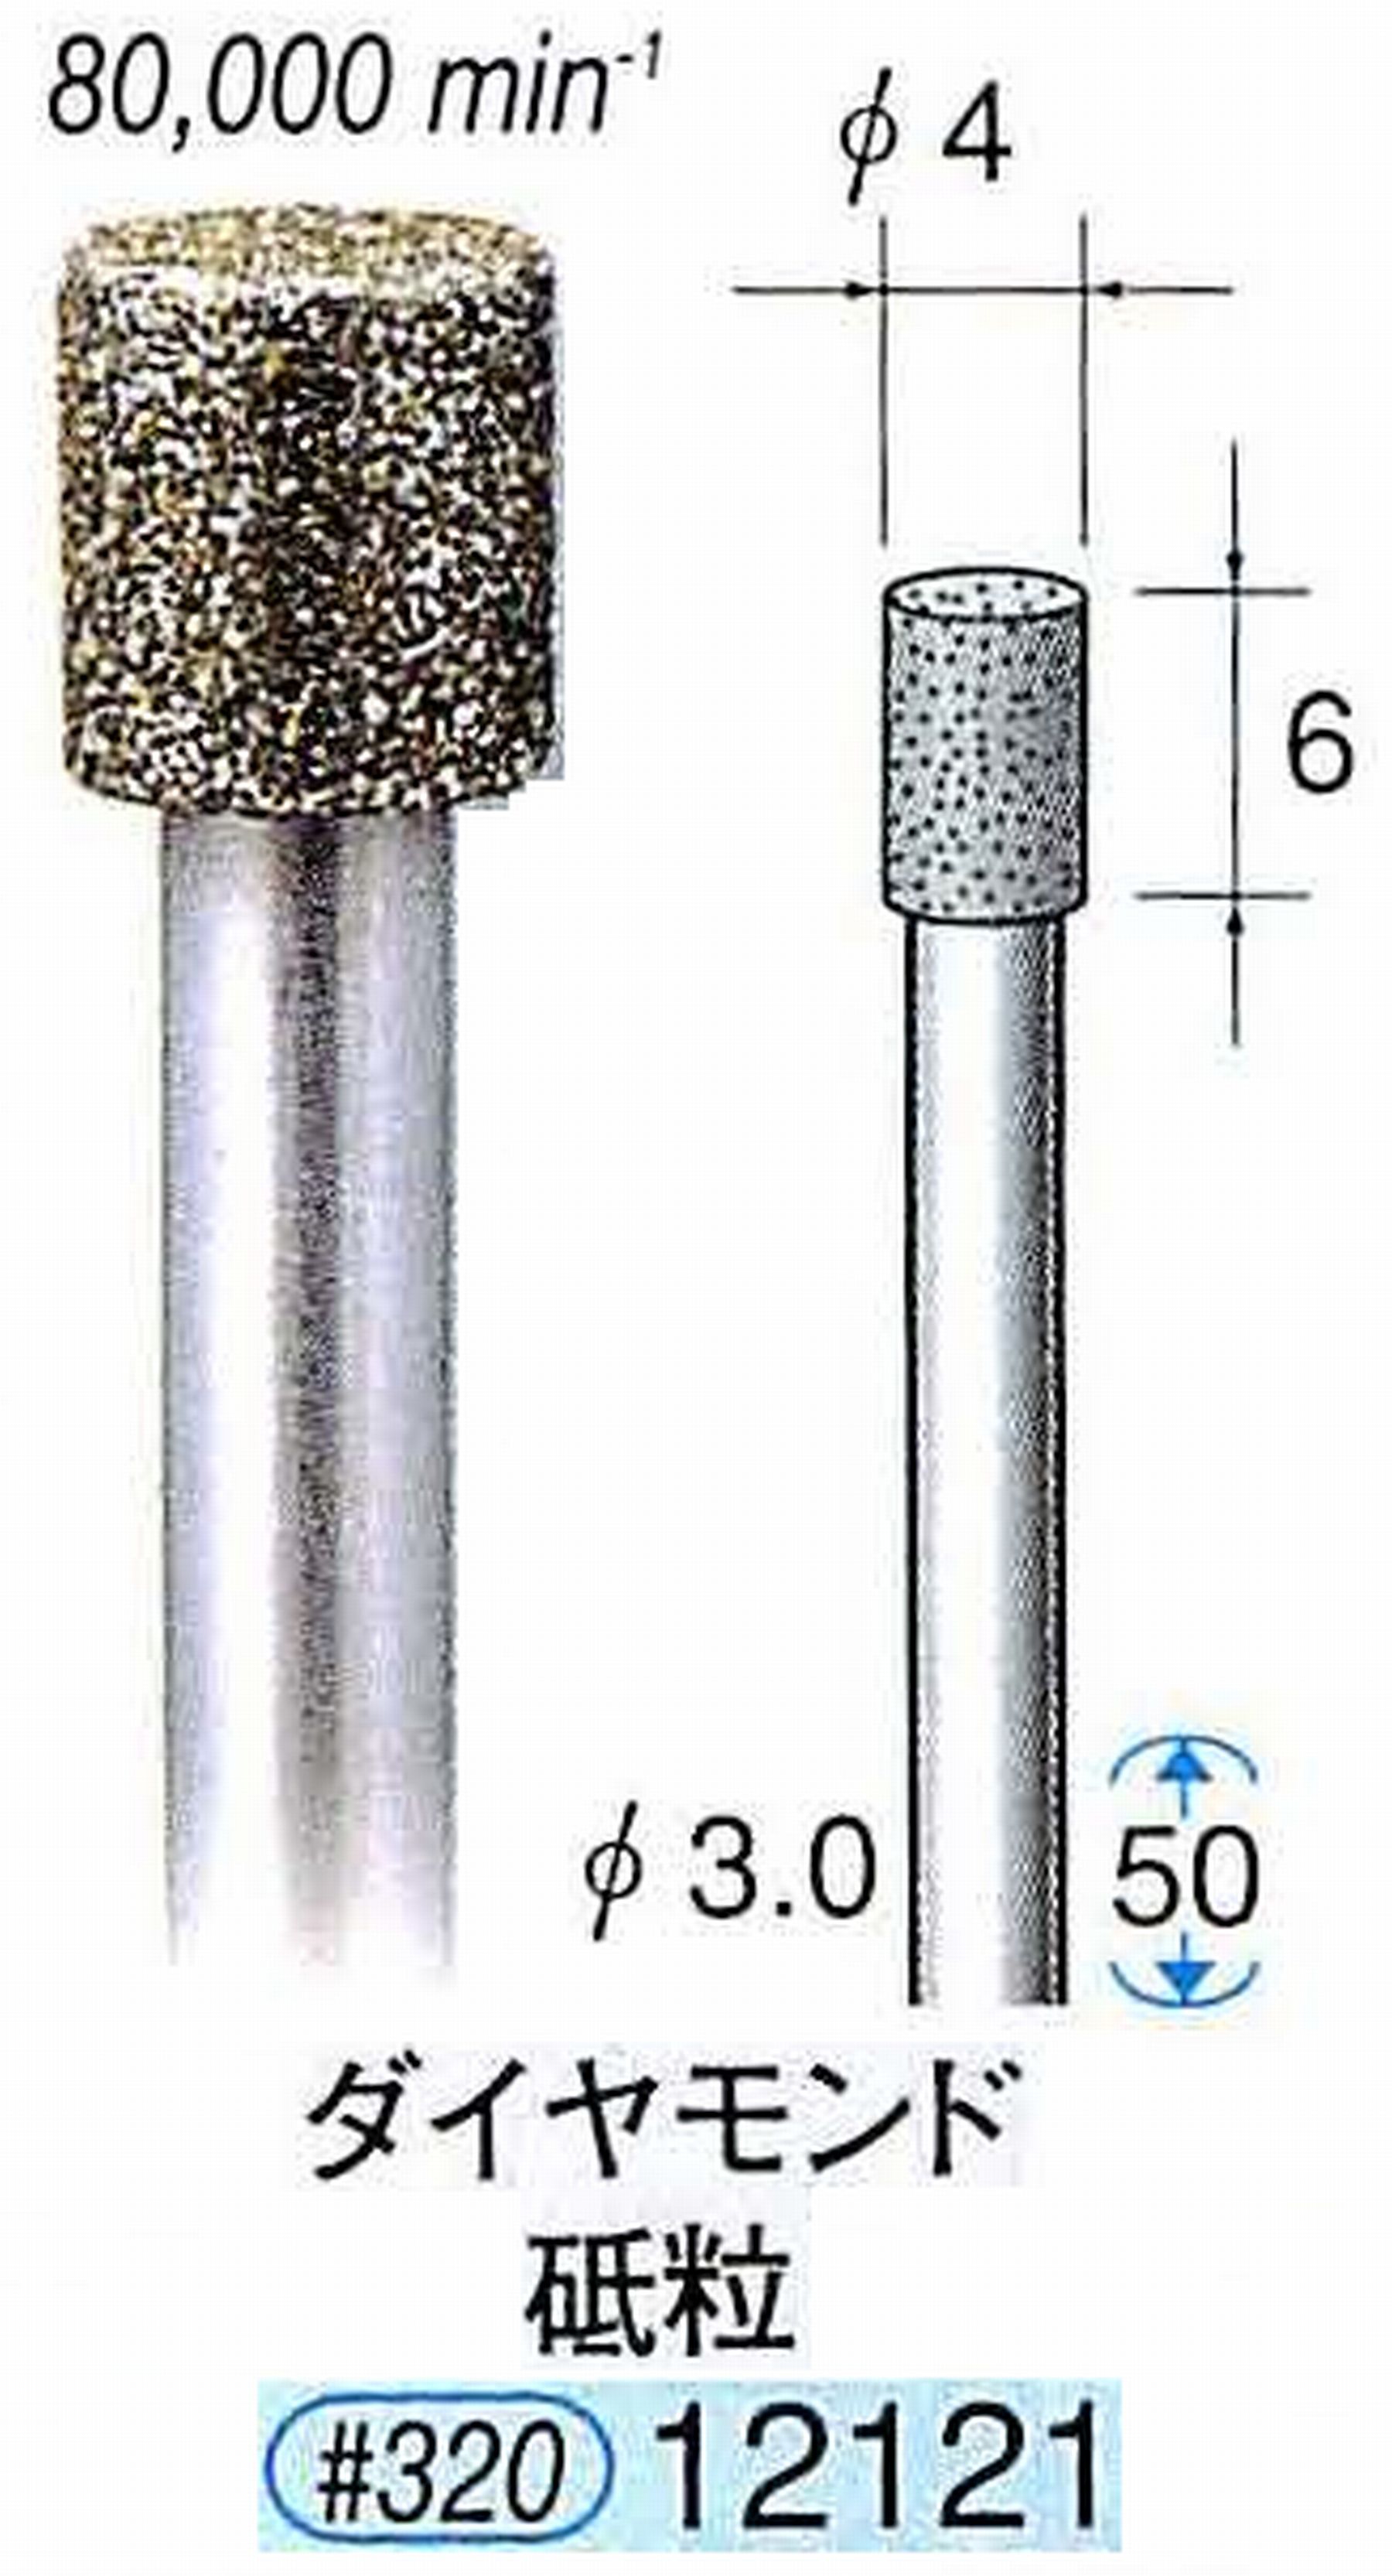 ナカニシ/NAKANISHI 電着ダイヤモンド ダイヤモンド砥粒 軸径(シャンク)φ3.0mm 12121